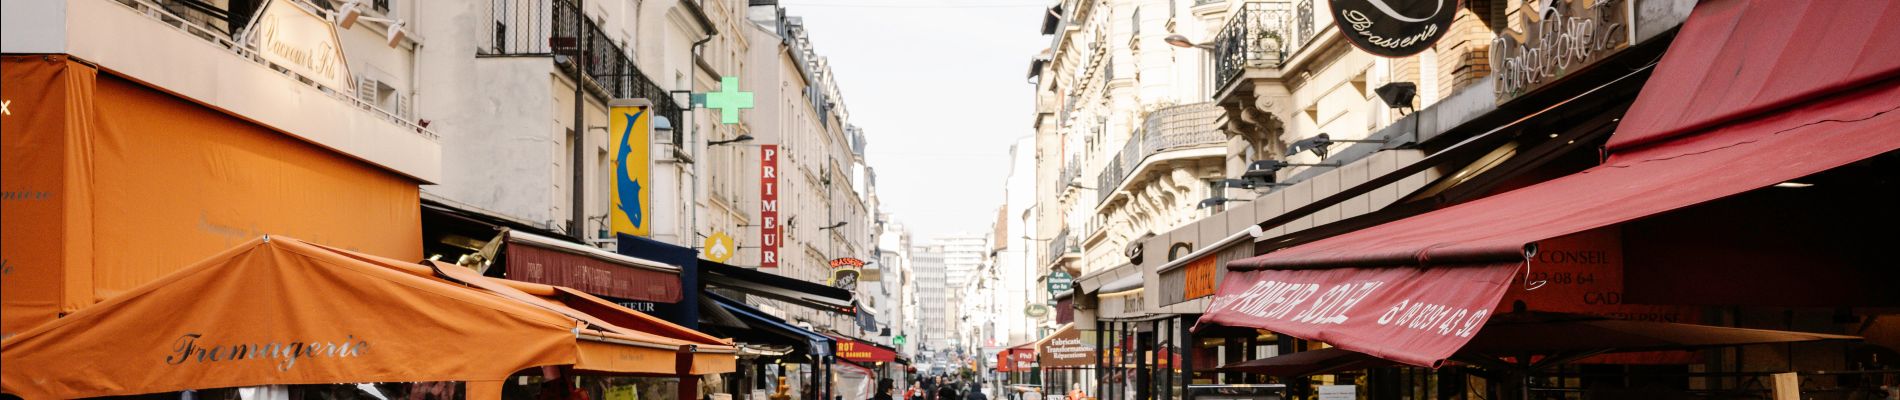 POI Paris - Rue Daguerre, commerçante et animée - Photo